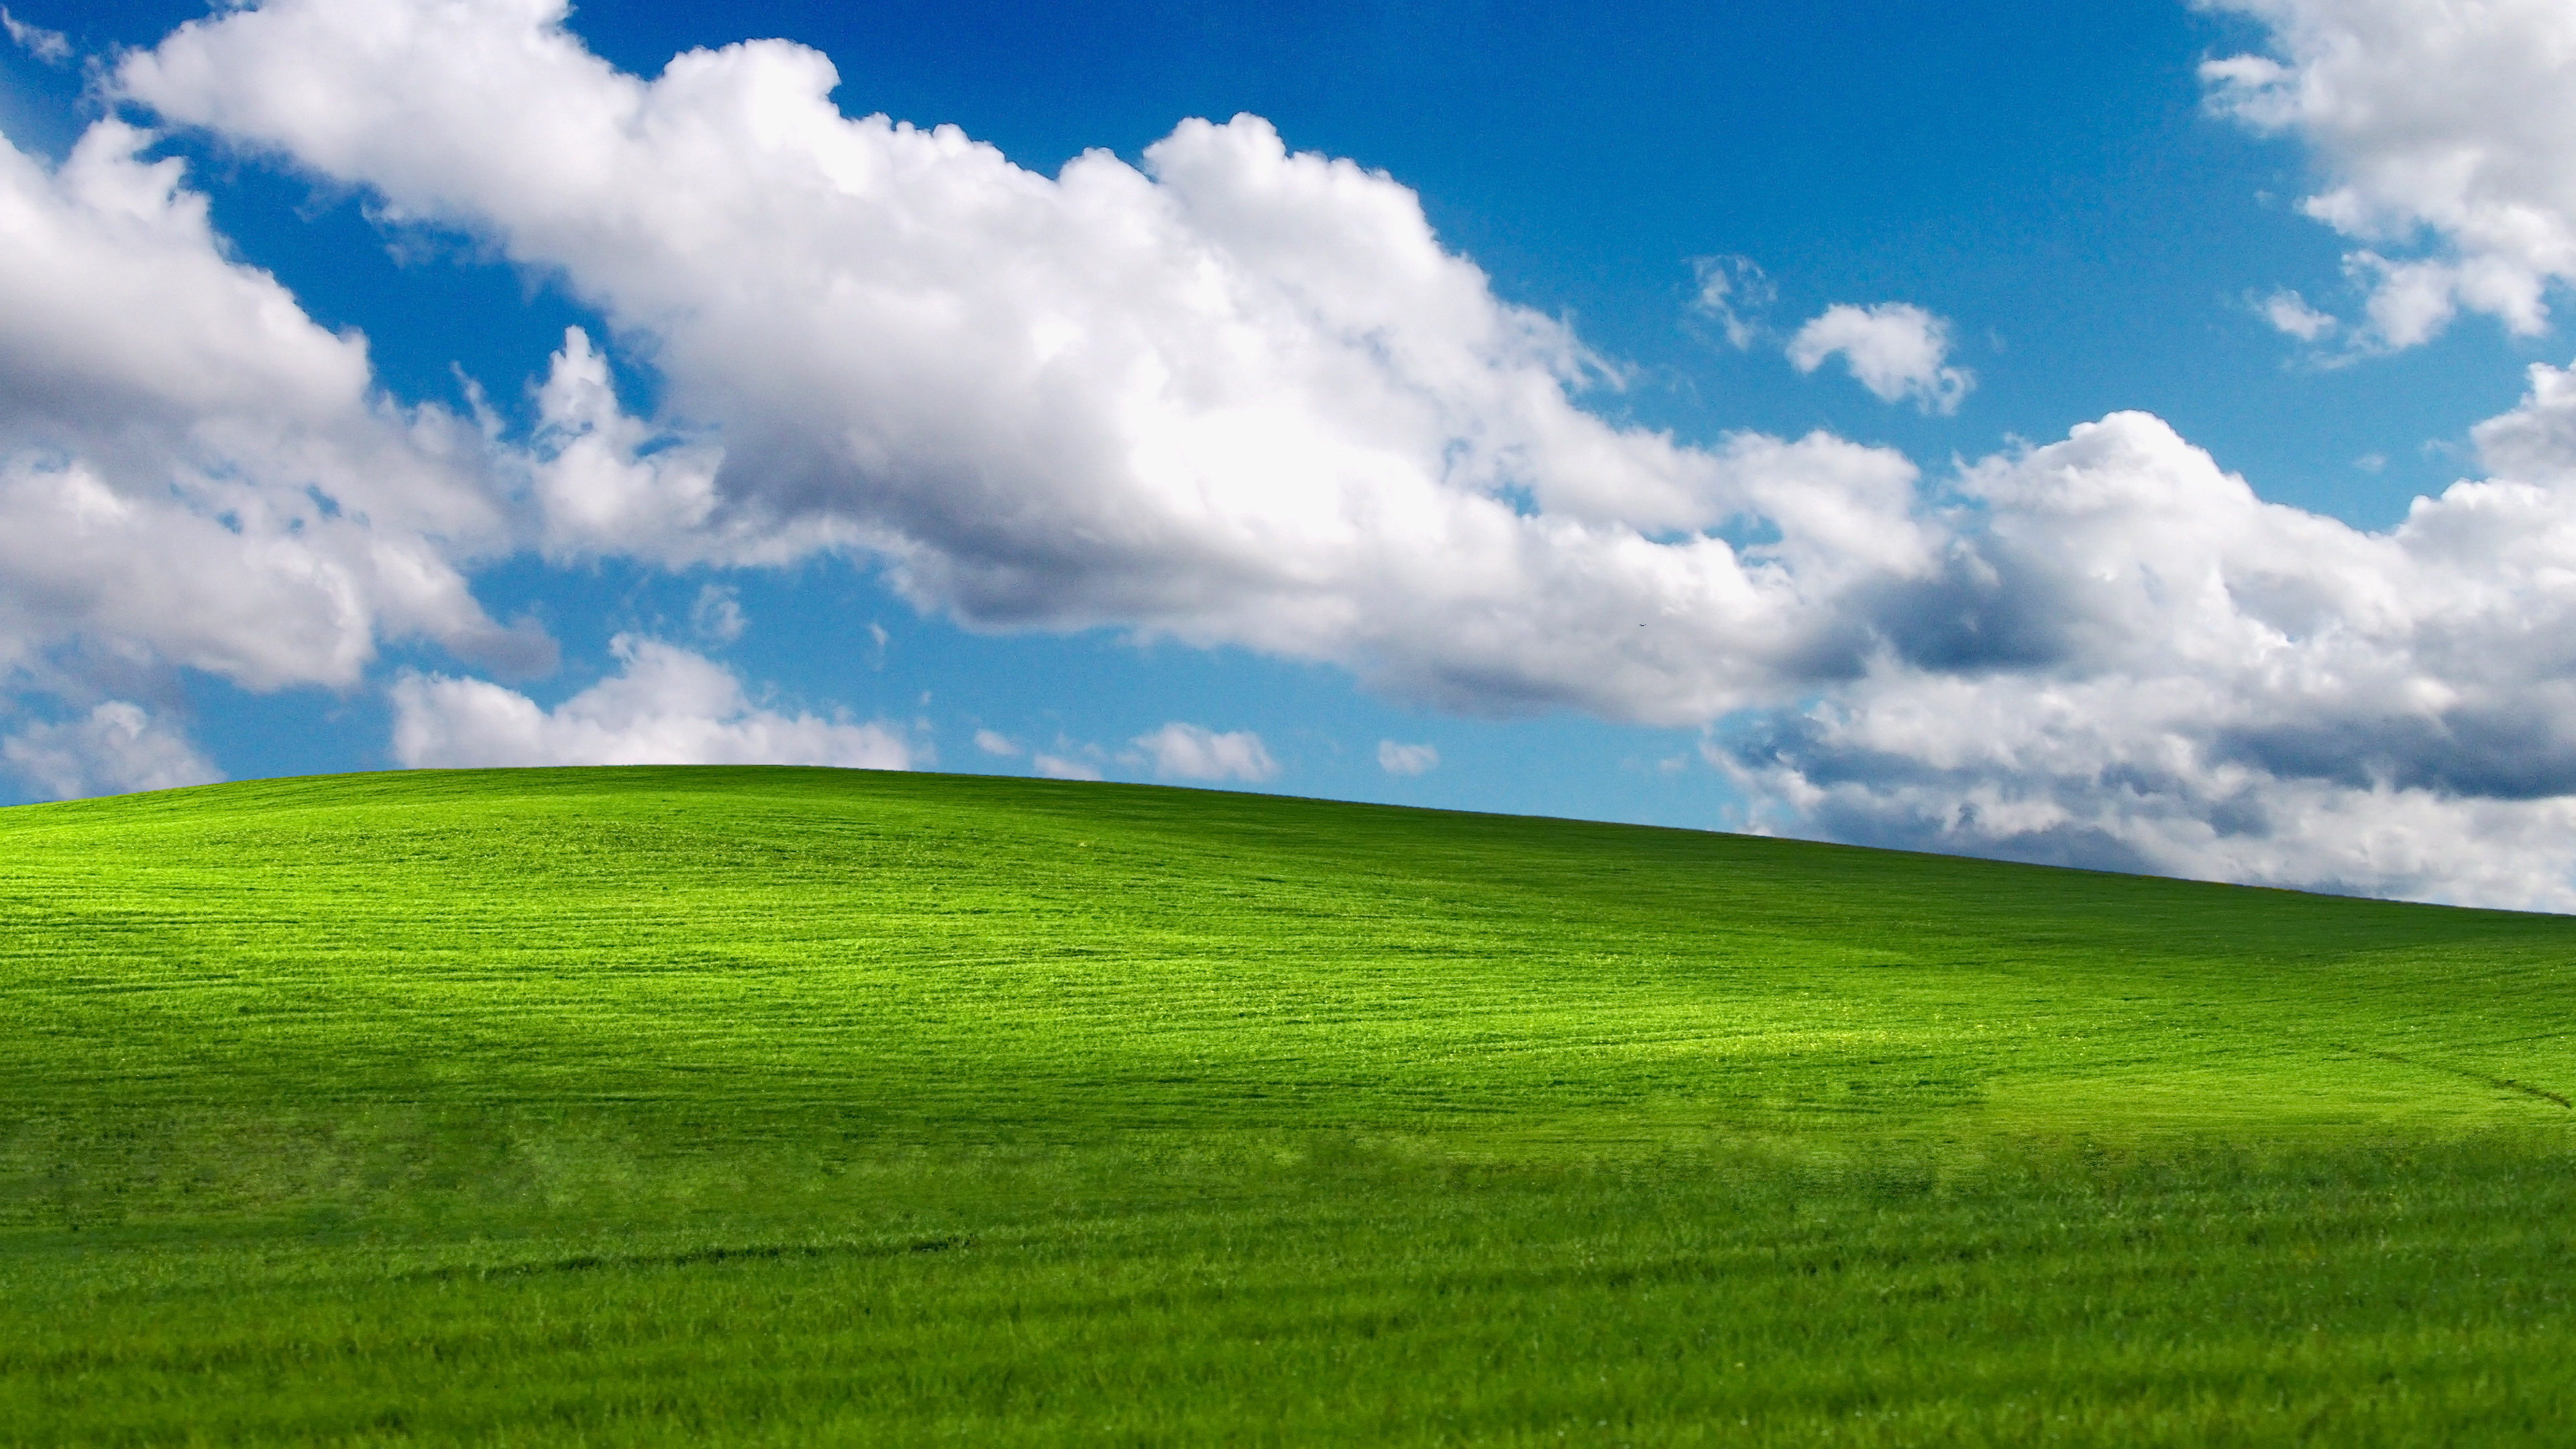 Tìm kiếm những hình nền miễn phí từ Windows XP để giúp máy tính của bạn trở nên bắt mắt và cá tính hơn. Với video hướng dẫn và các bài đánh giá hoàn hảo, chúng tôi sẽ giúp các bạn có thể tải về những hình nền độc đáo cho máy tính của mình.